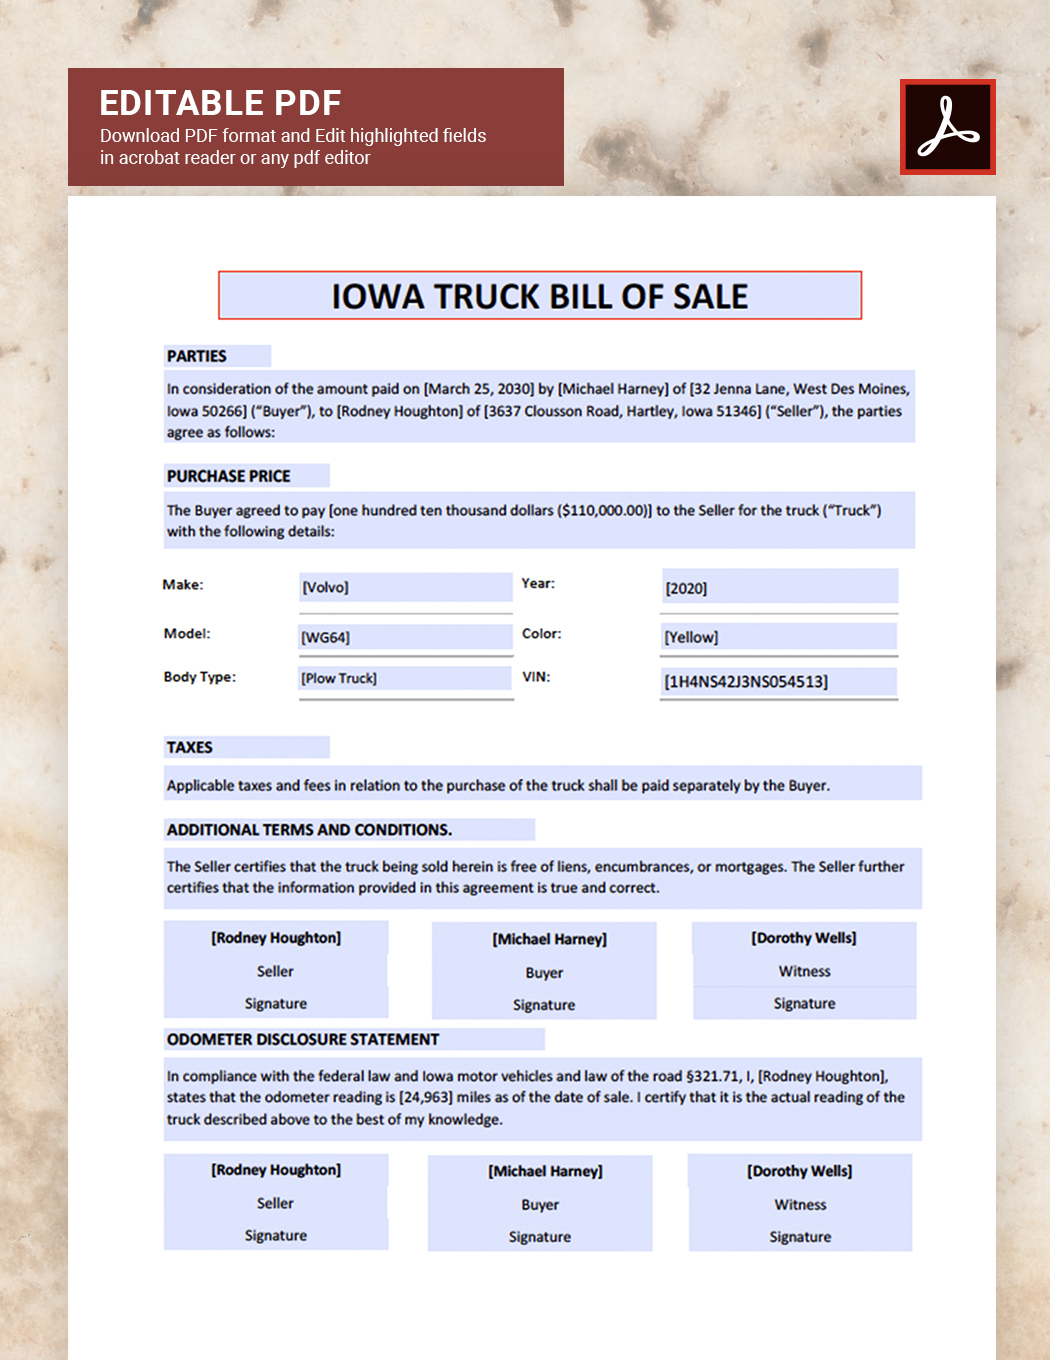 Iowa Truck Bill of Sale Template